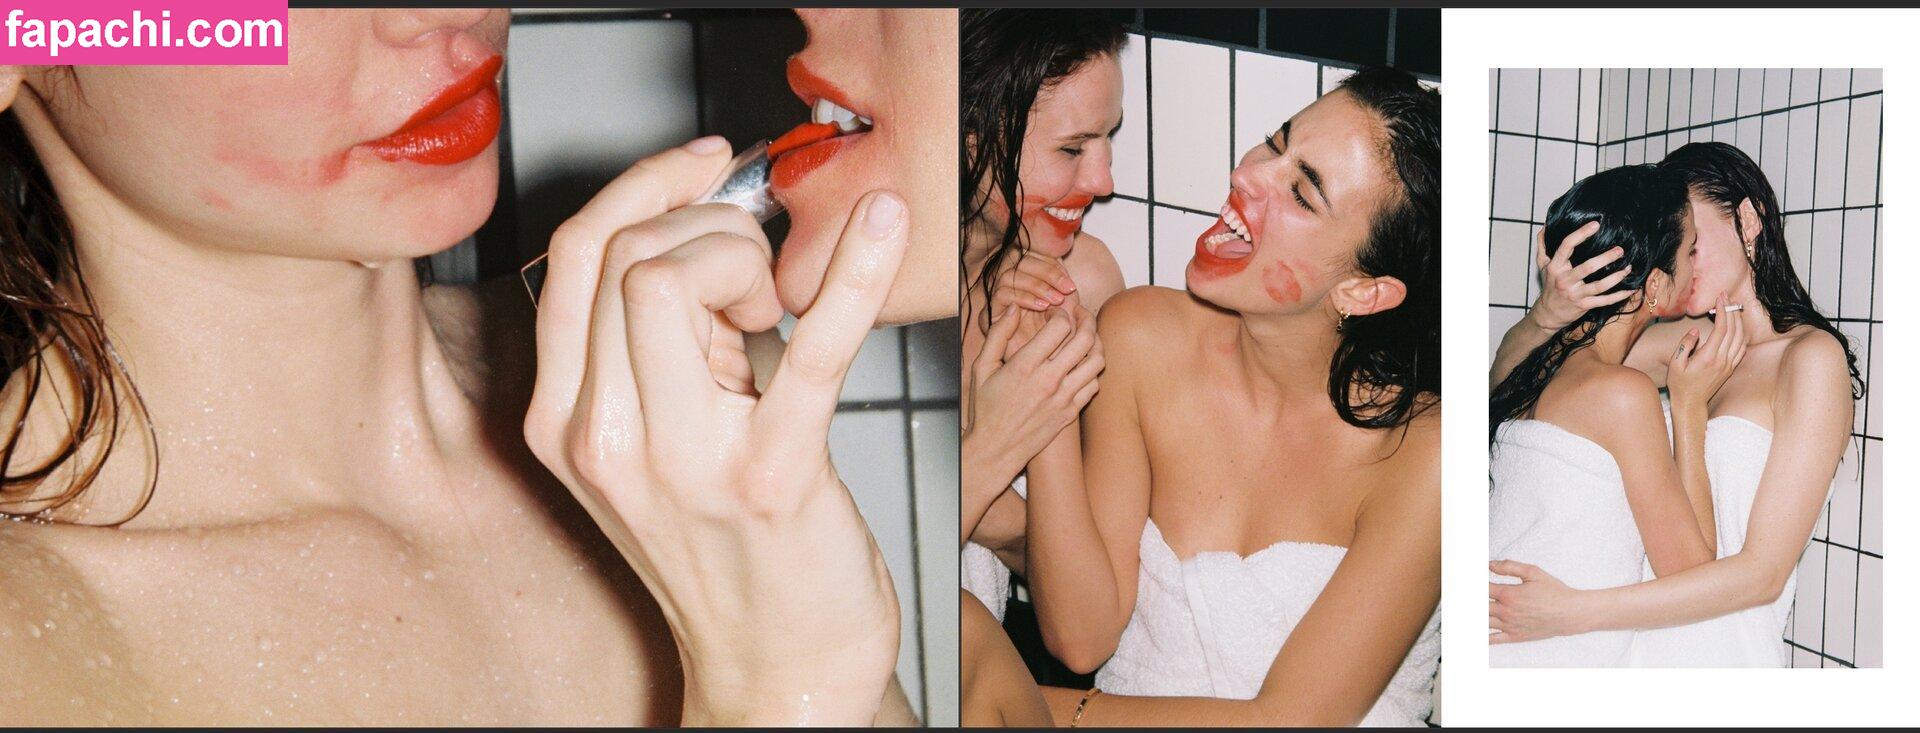 Elisa & Renne Herbert Twins / reneeherbert_ leaked nude photo #0071 from OnlyFans/Patreon